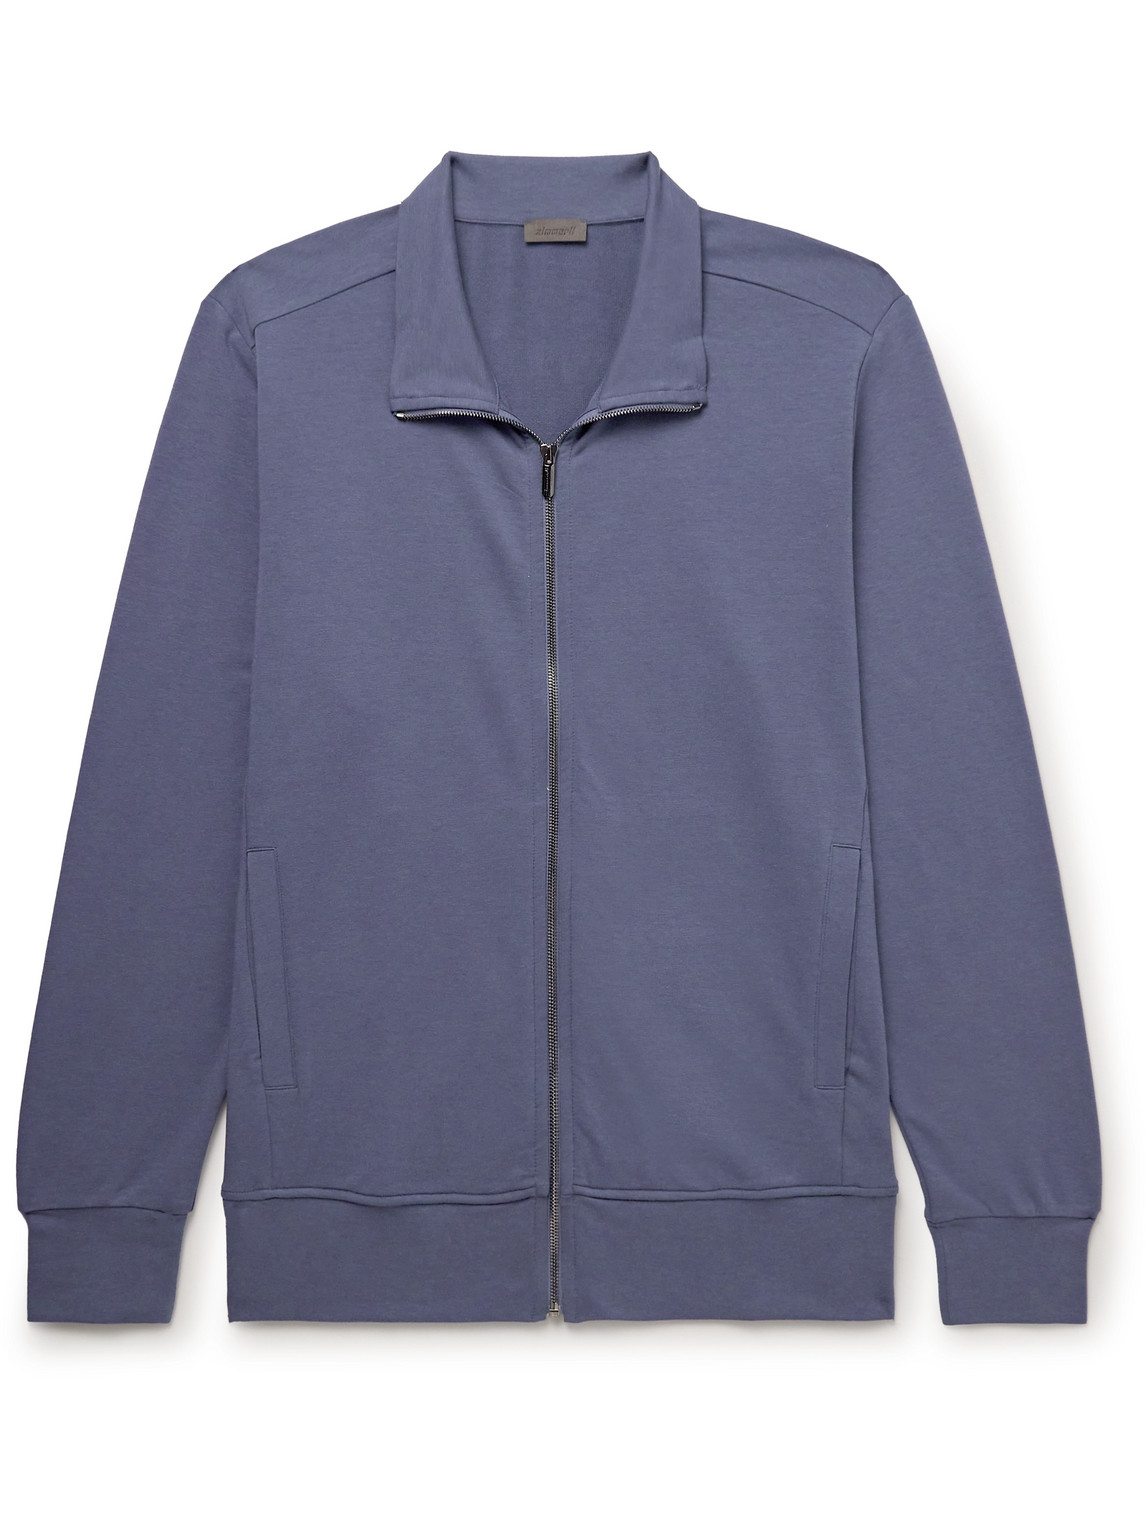 Zimmerli - Stretch Modal and Cotton-Blend Jersey Track Jacket - Men - Blue - L von Zimmerli